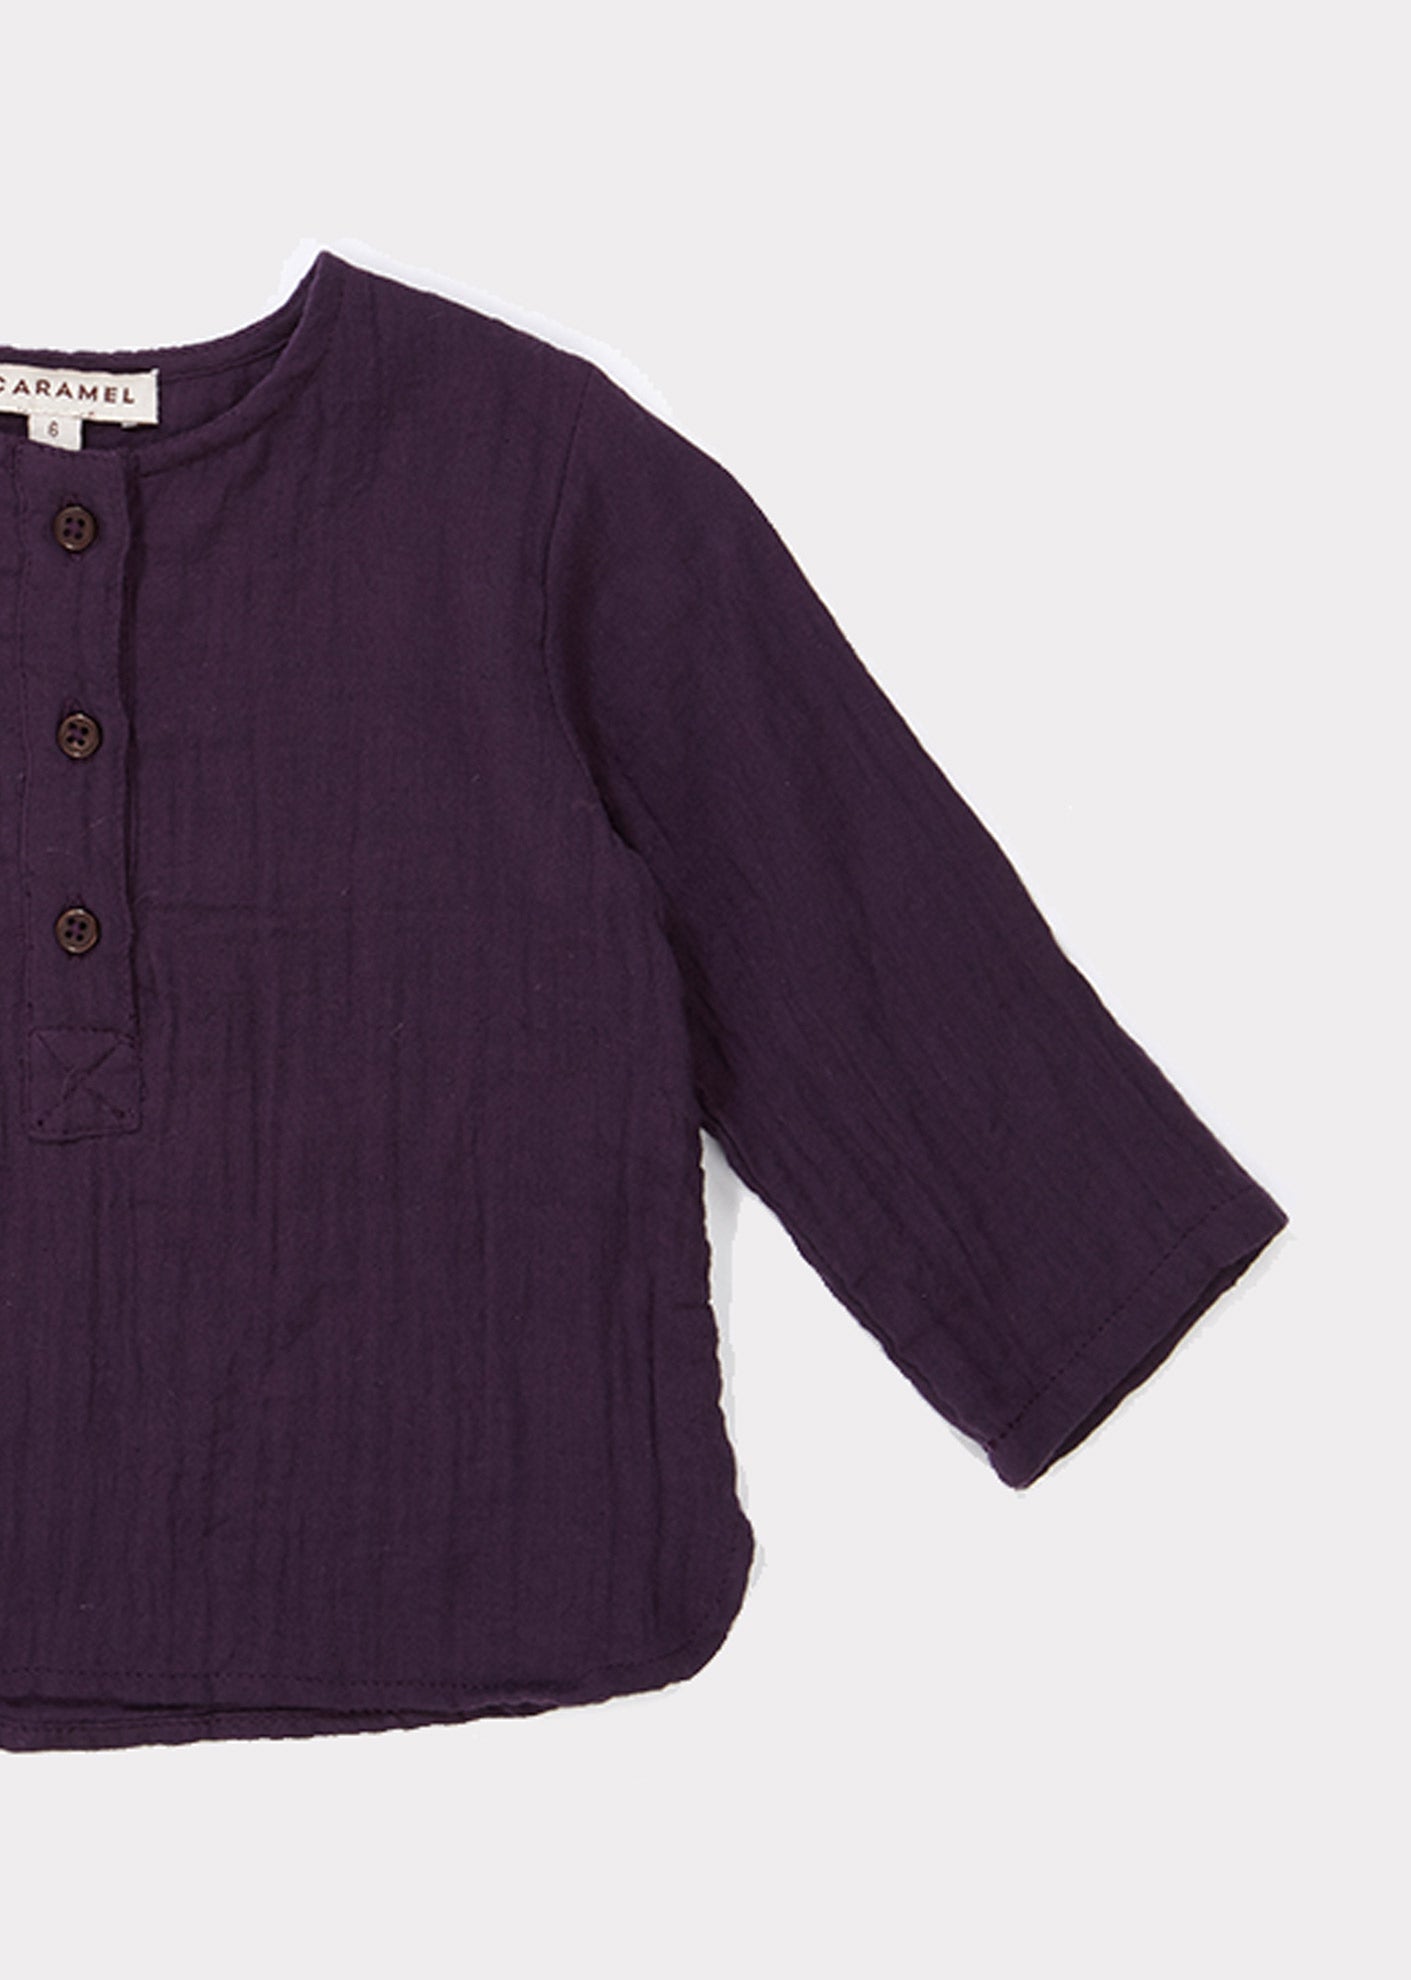 Baby Girls Purple Cotton Shirt